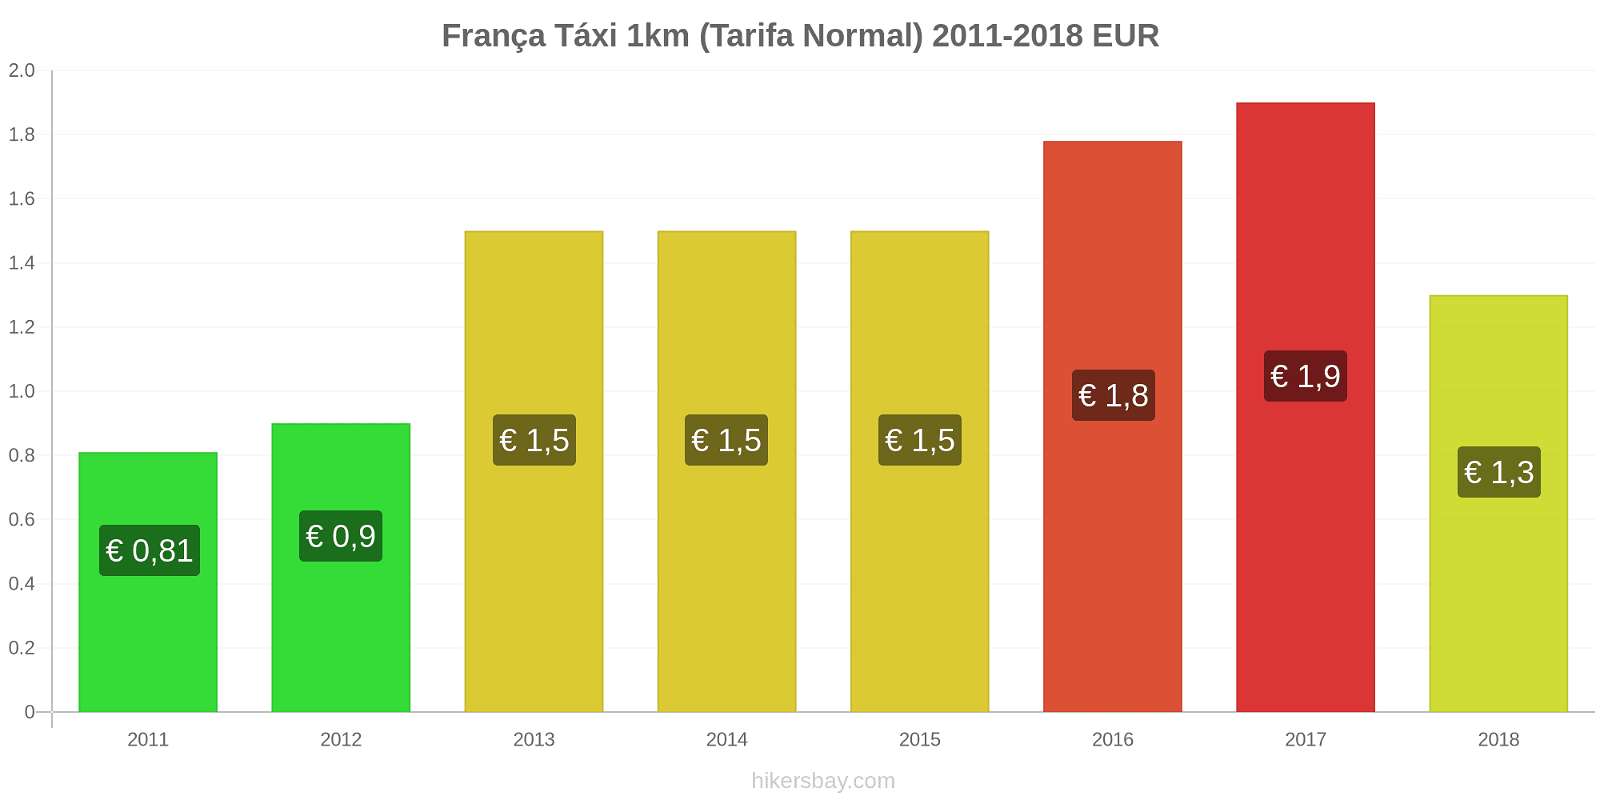 França mudanças de preços Táxi 1km (Tarifa Normal) hikersbay.com